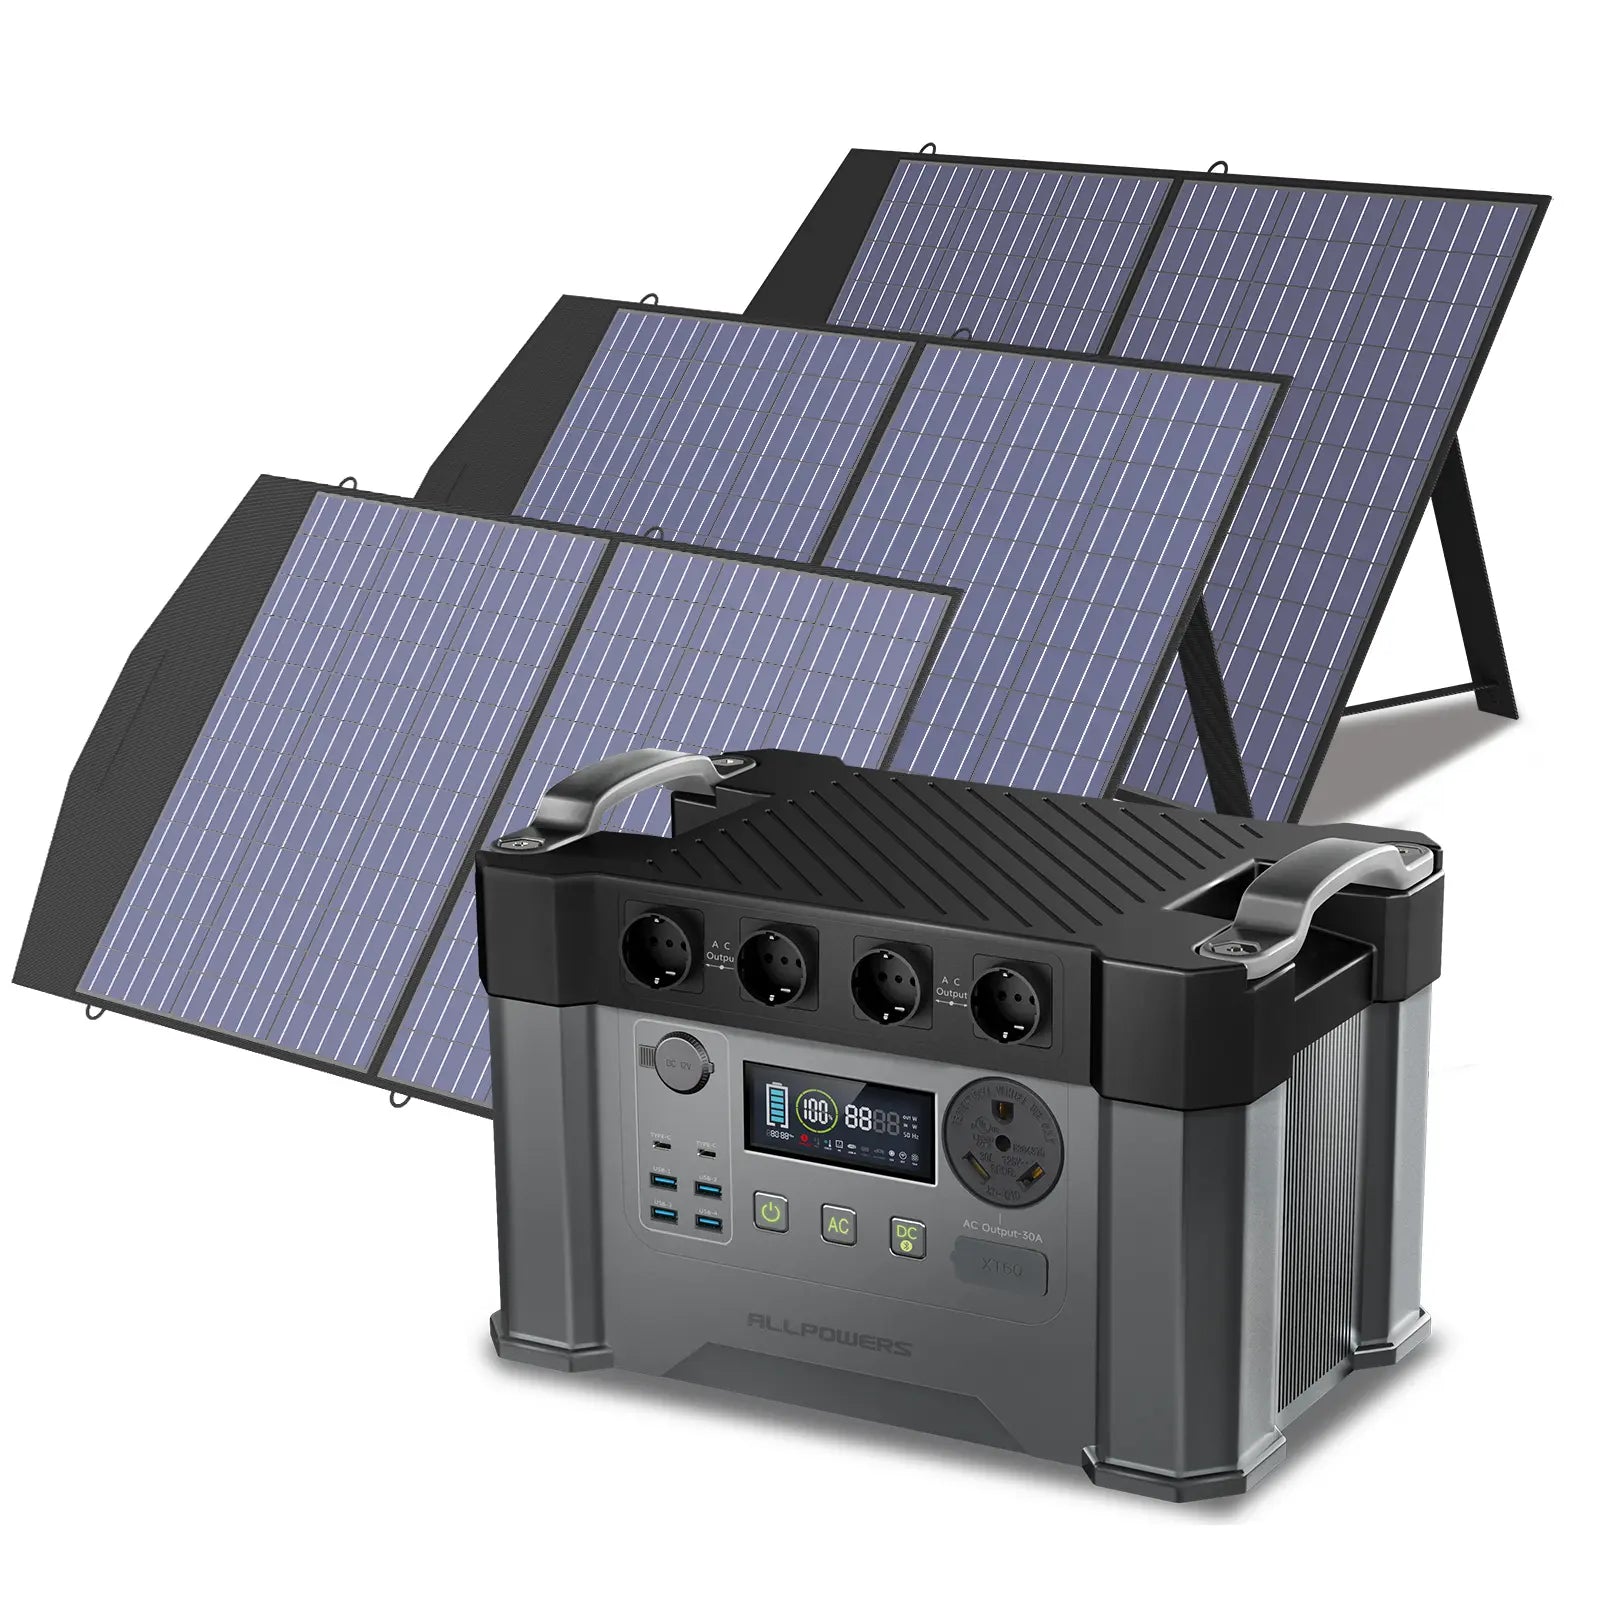 ALLPOWERS Kit Generatore Solare 2400W (S2000 Pro + SP027 100W Pannello Solare)